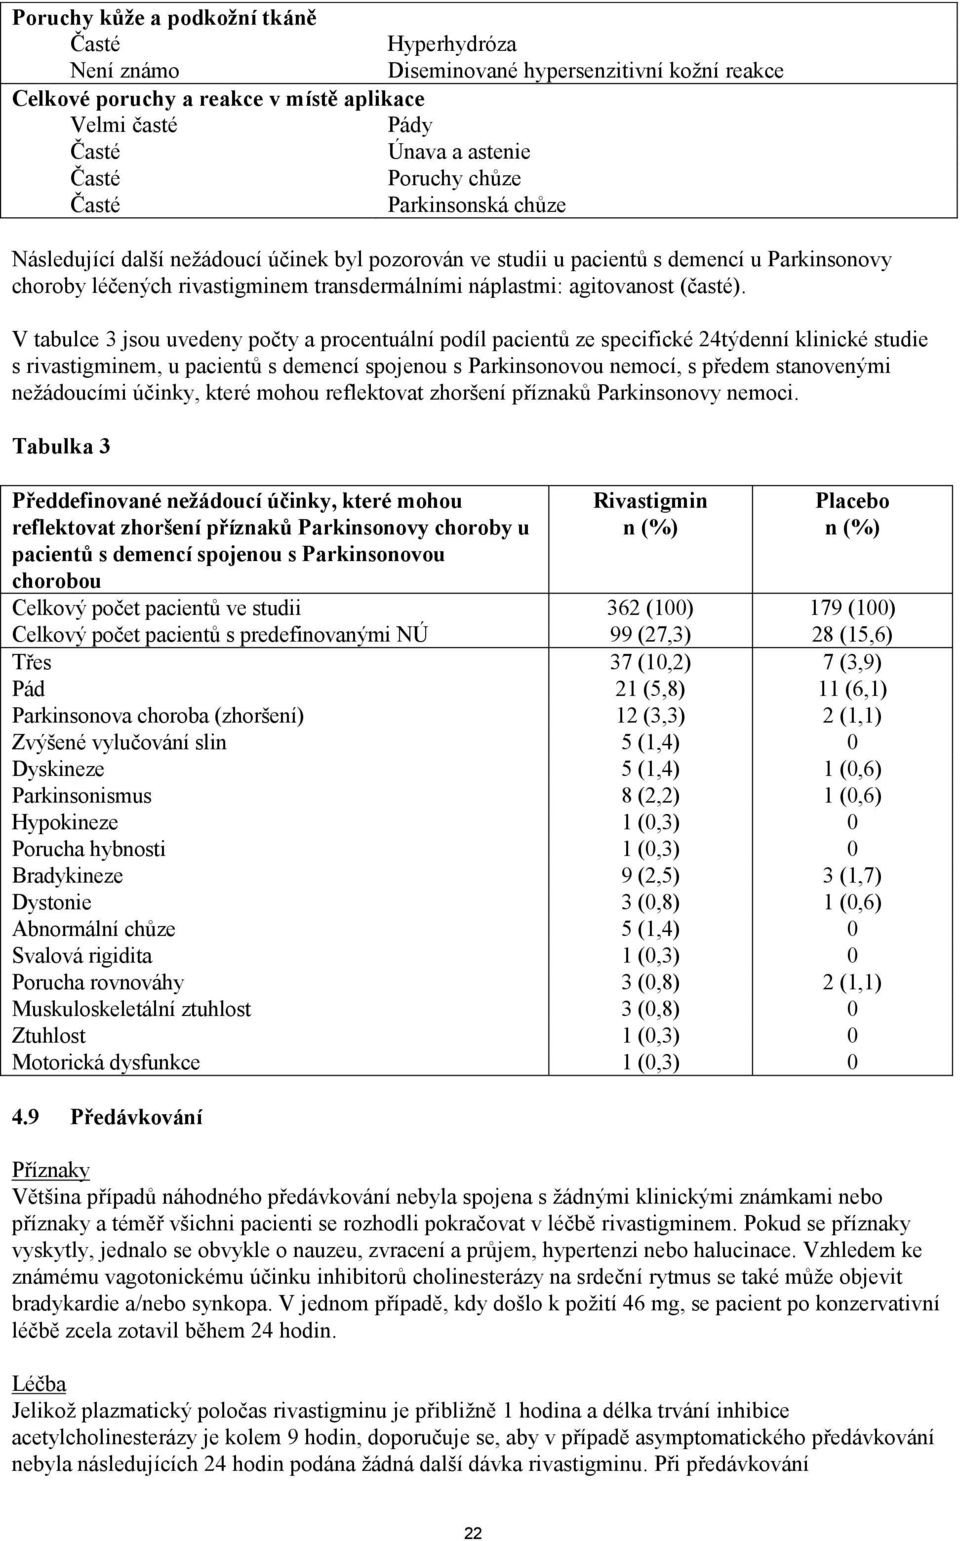 V tabulce 3 jsou uvedeny počty a procentuální podíl pacientů ze specifické 24týdenní klinické studie s rivastigminem, u pacientů s demencí spojenou s Parkinsonovou nemocí, s předem stanovenými